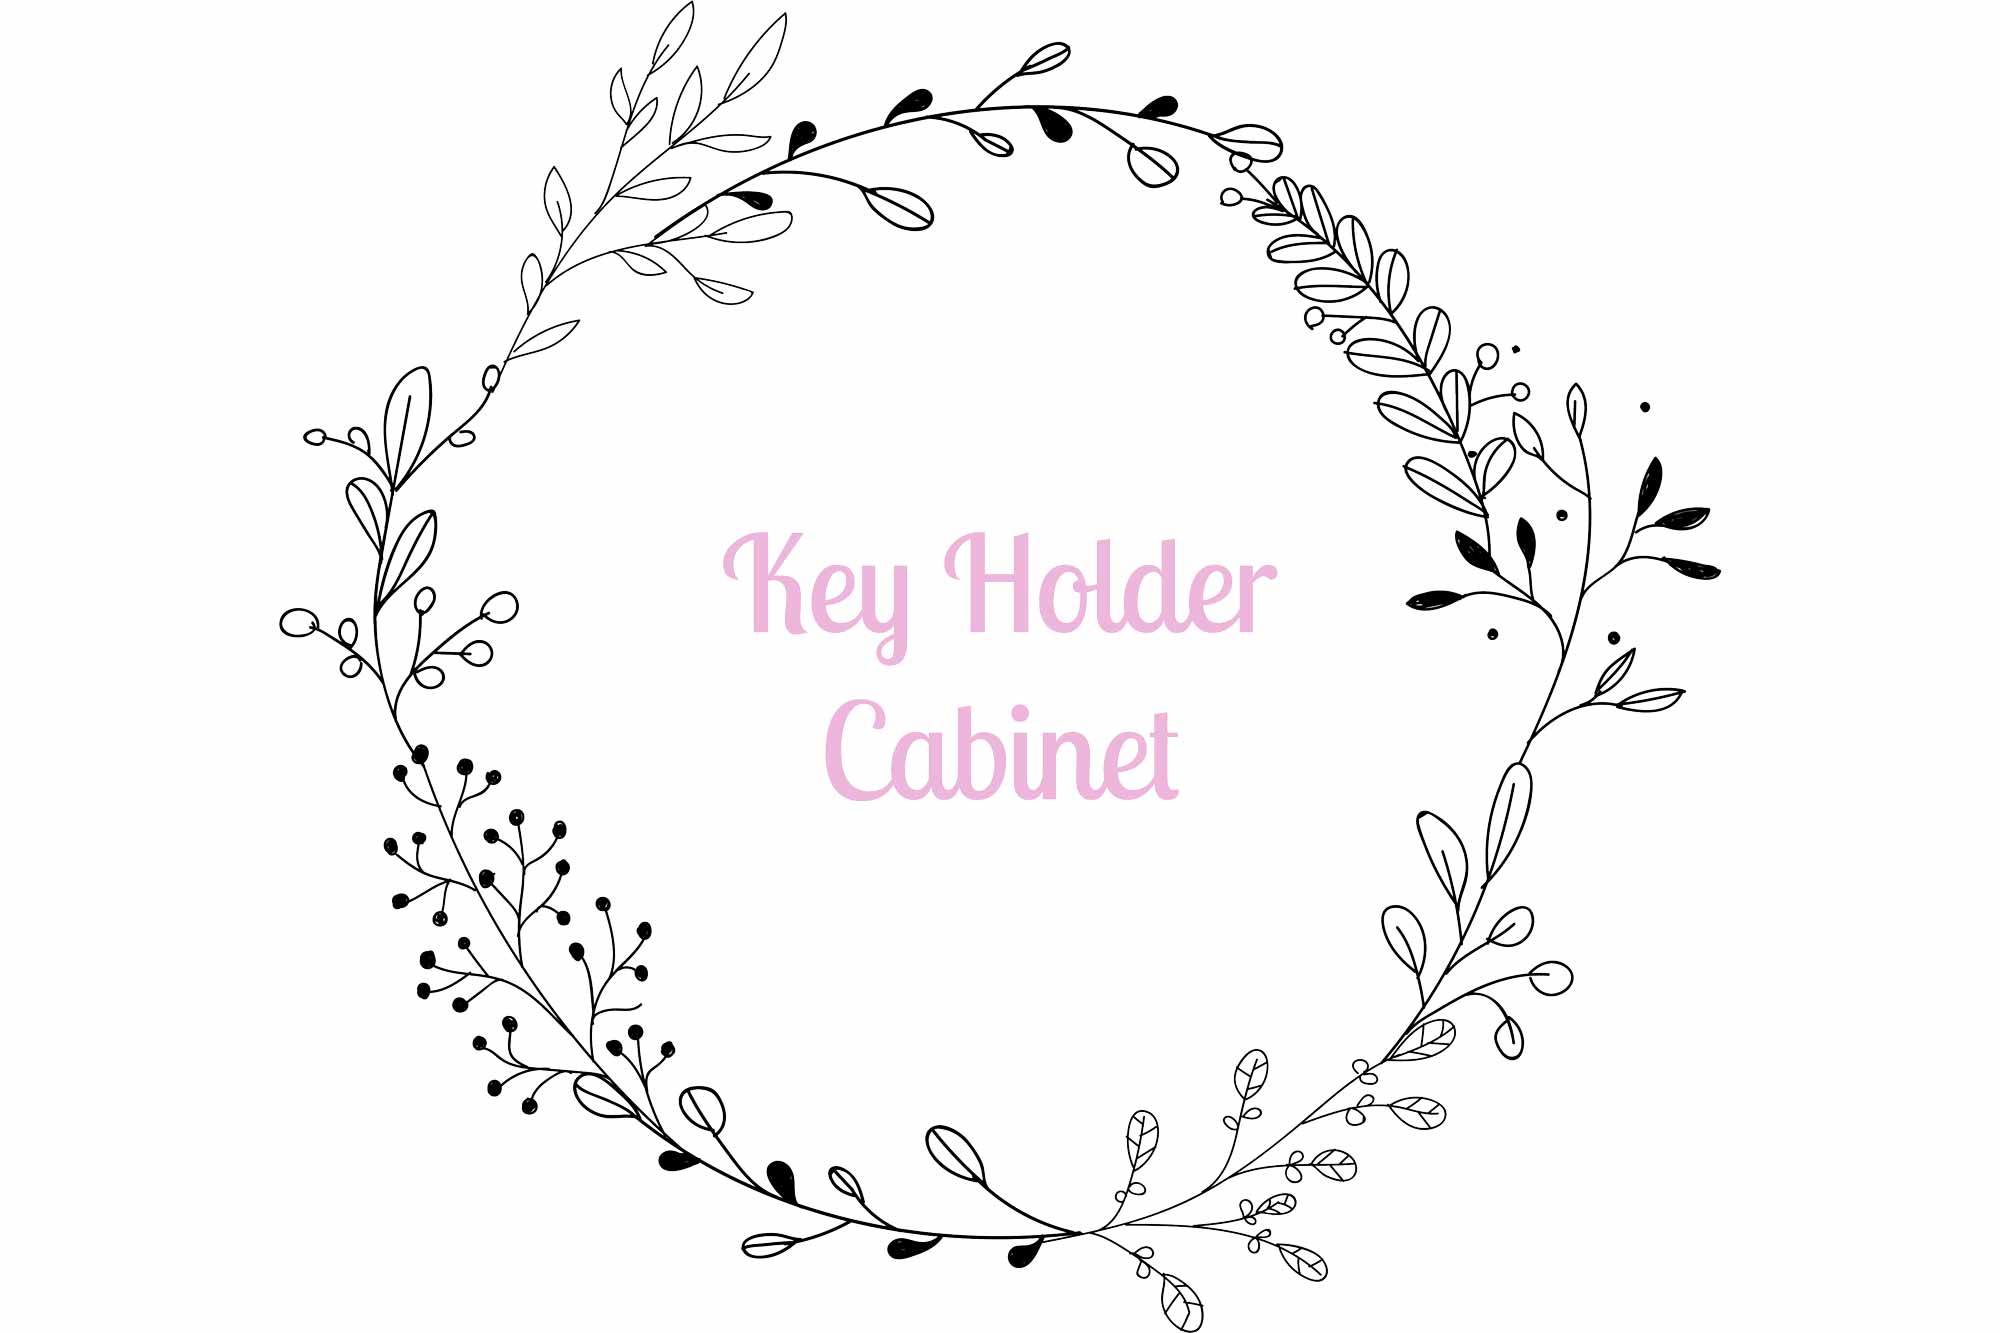 Key Holder Cabinet